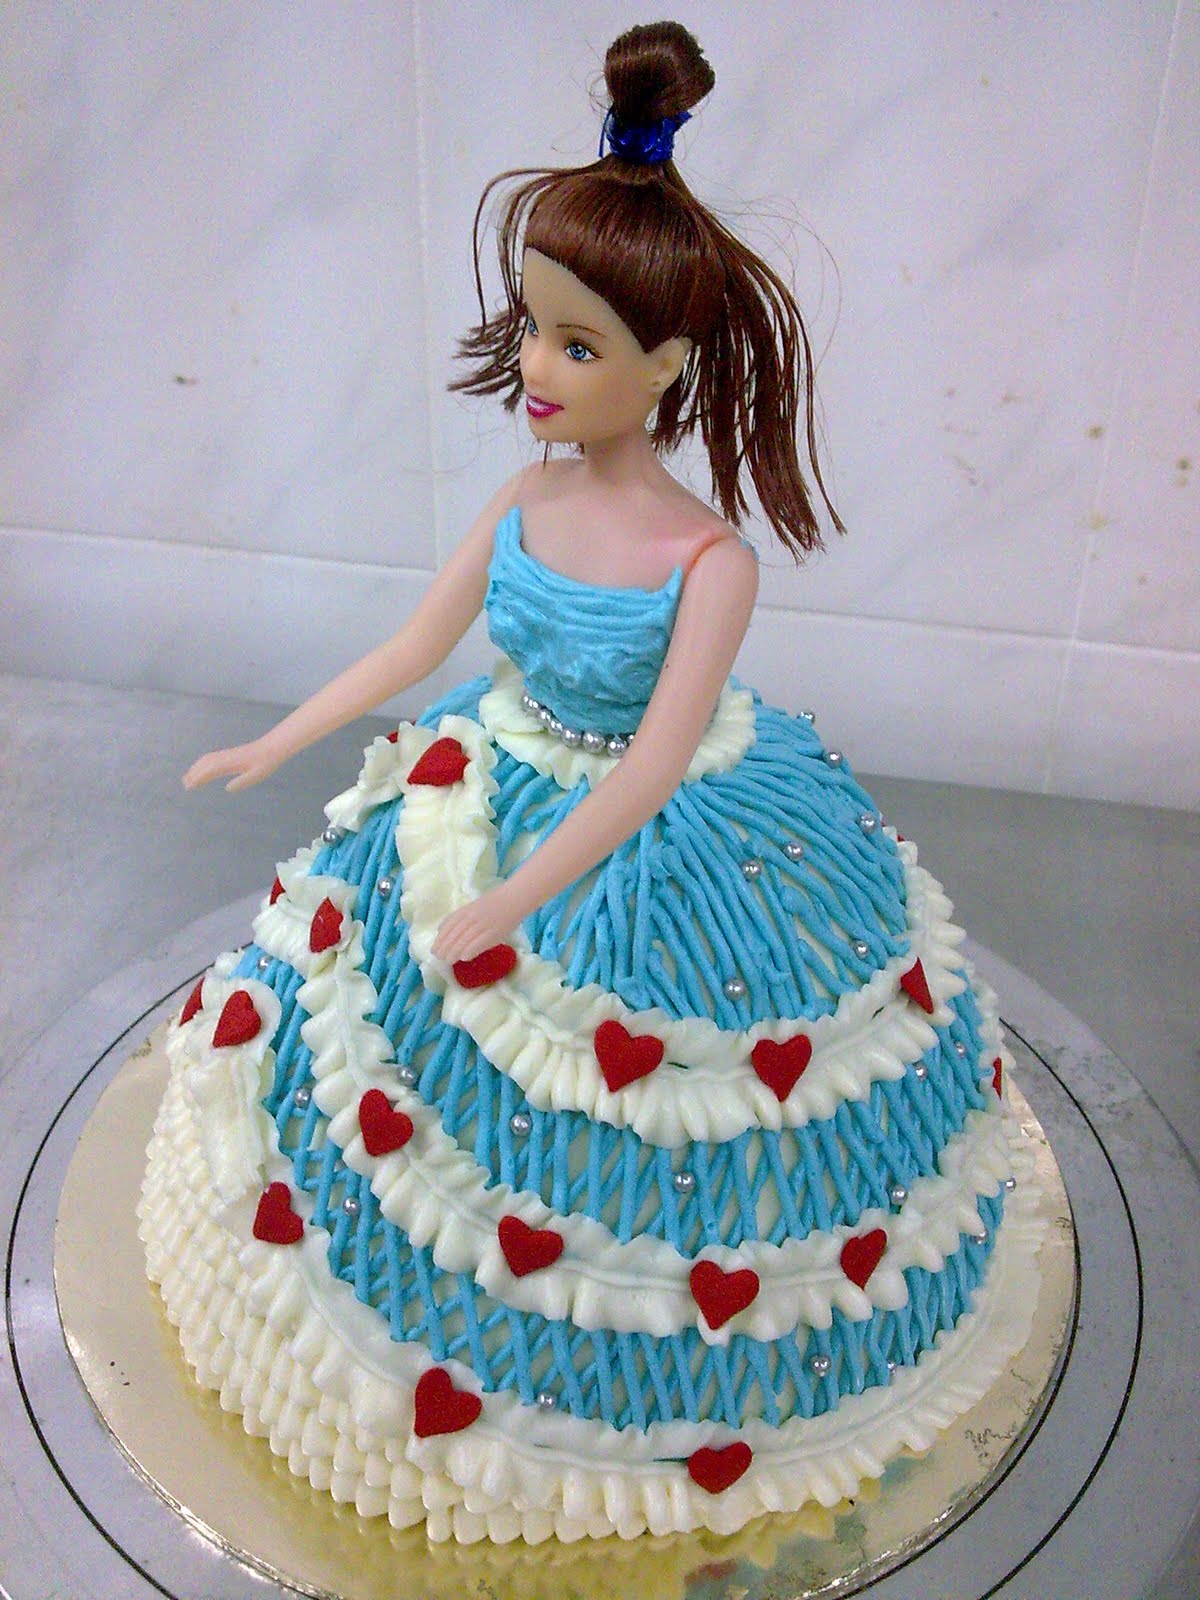 优雅的婚礼蛋糕娃娃风景名胜免费下载_jpg格式_4016像素_编号42793254-千图网